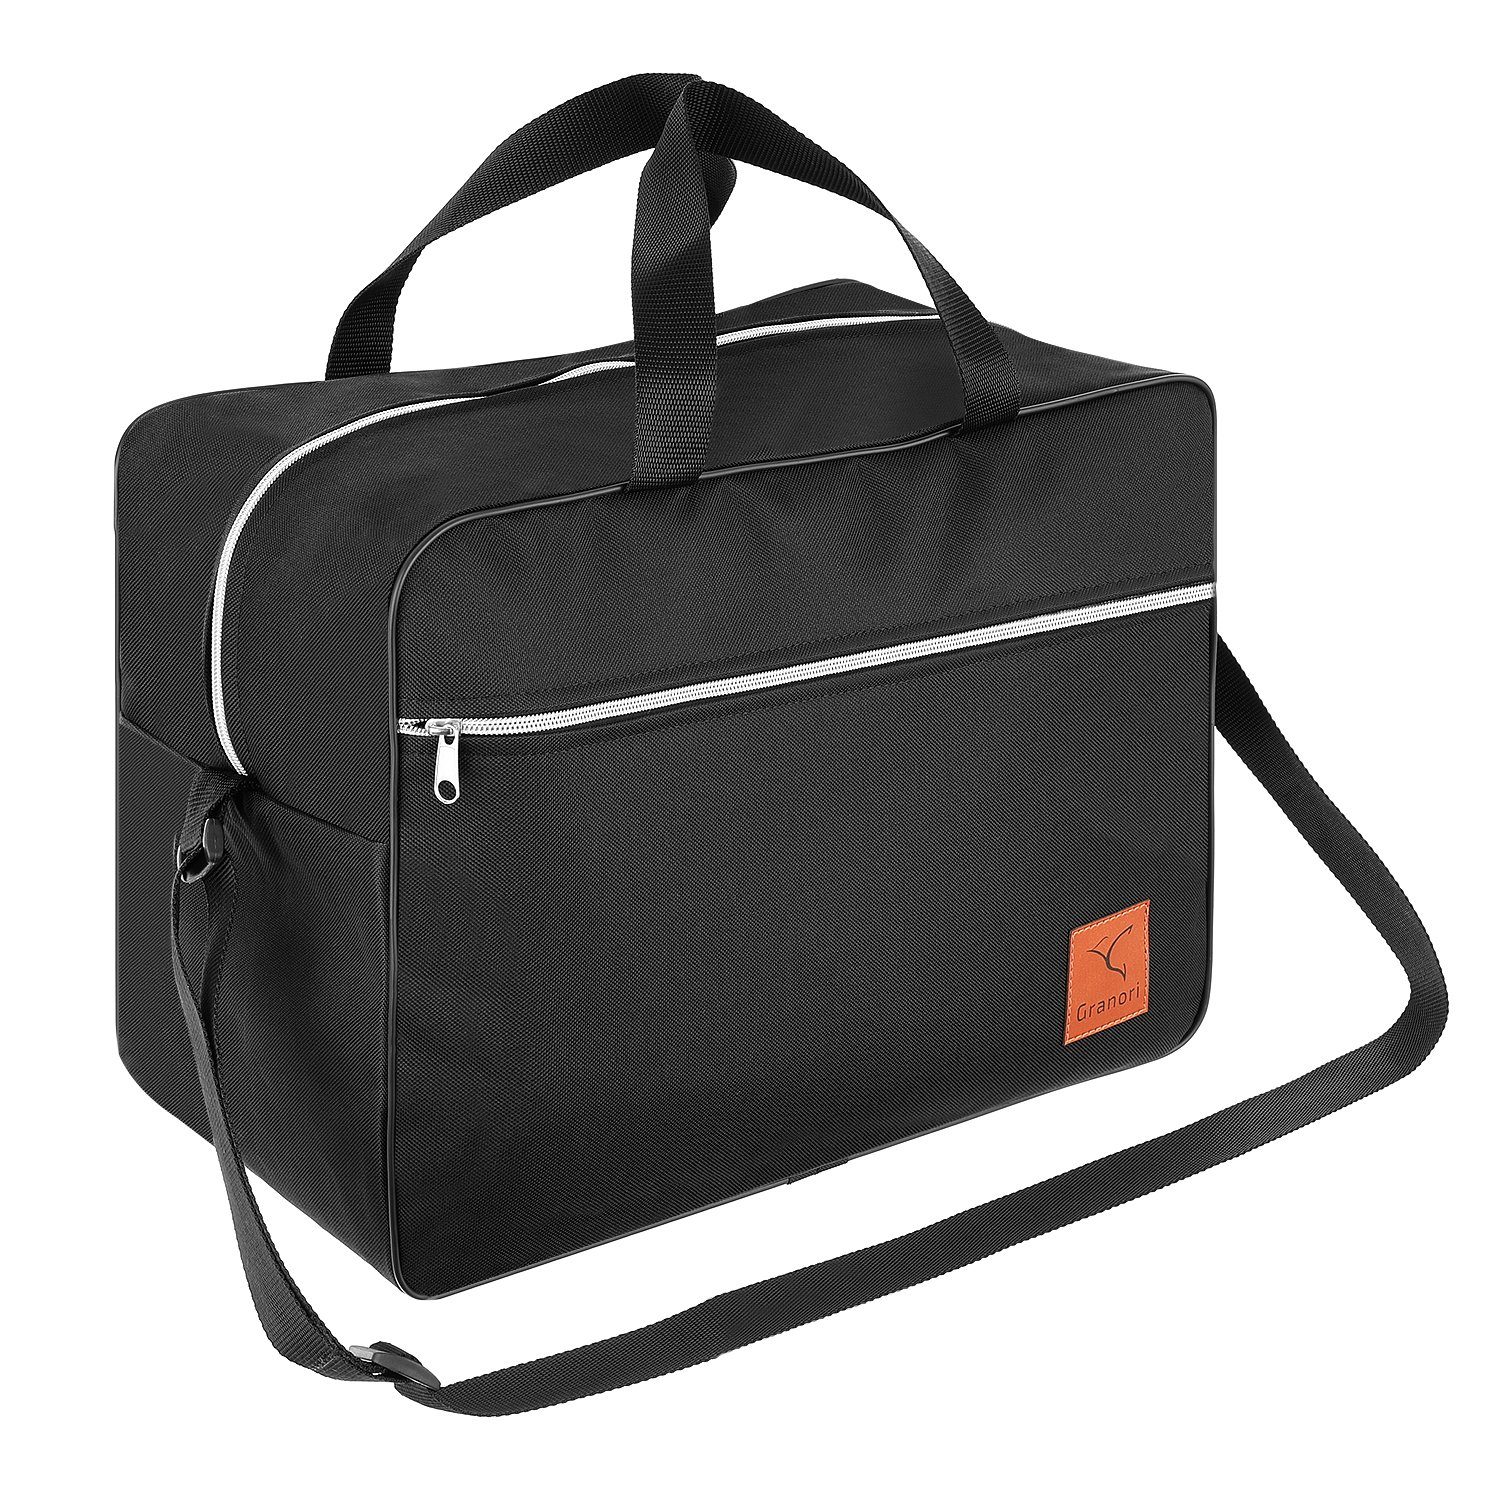 Granori Reisetasche 40x30x25 cm als Handgepäck 30 l für Flug mit z. B. Eurowings, extra leicht, mit geräumigem Hauptfach und verstellbarem Schultergurt